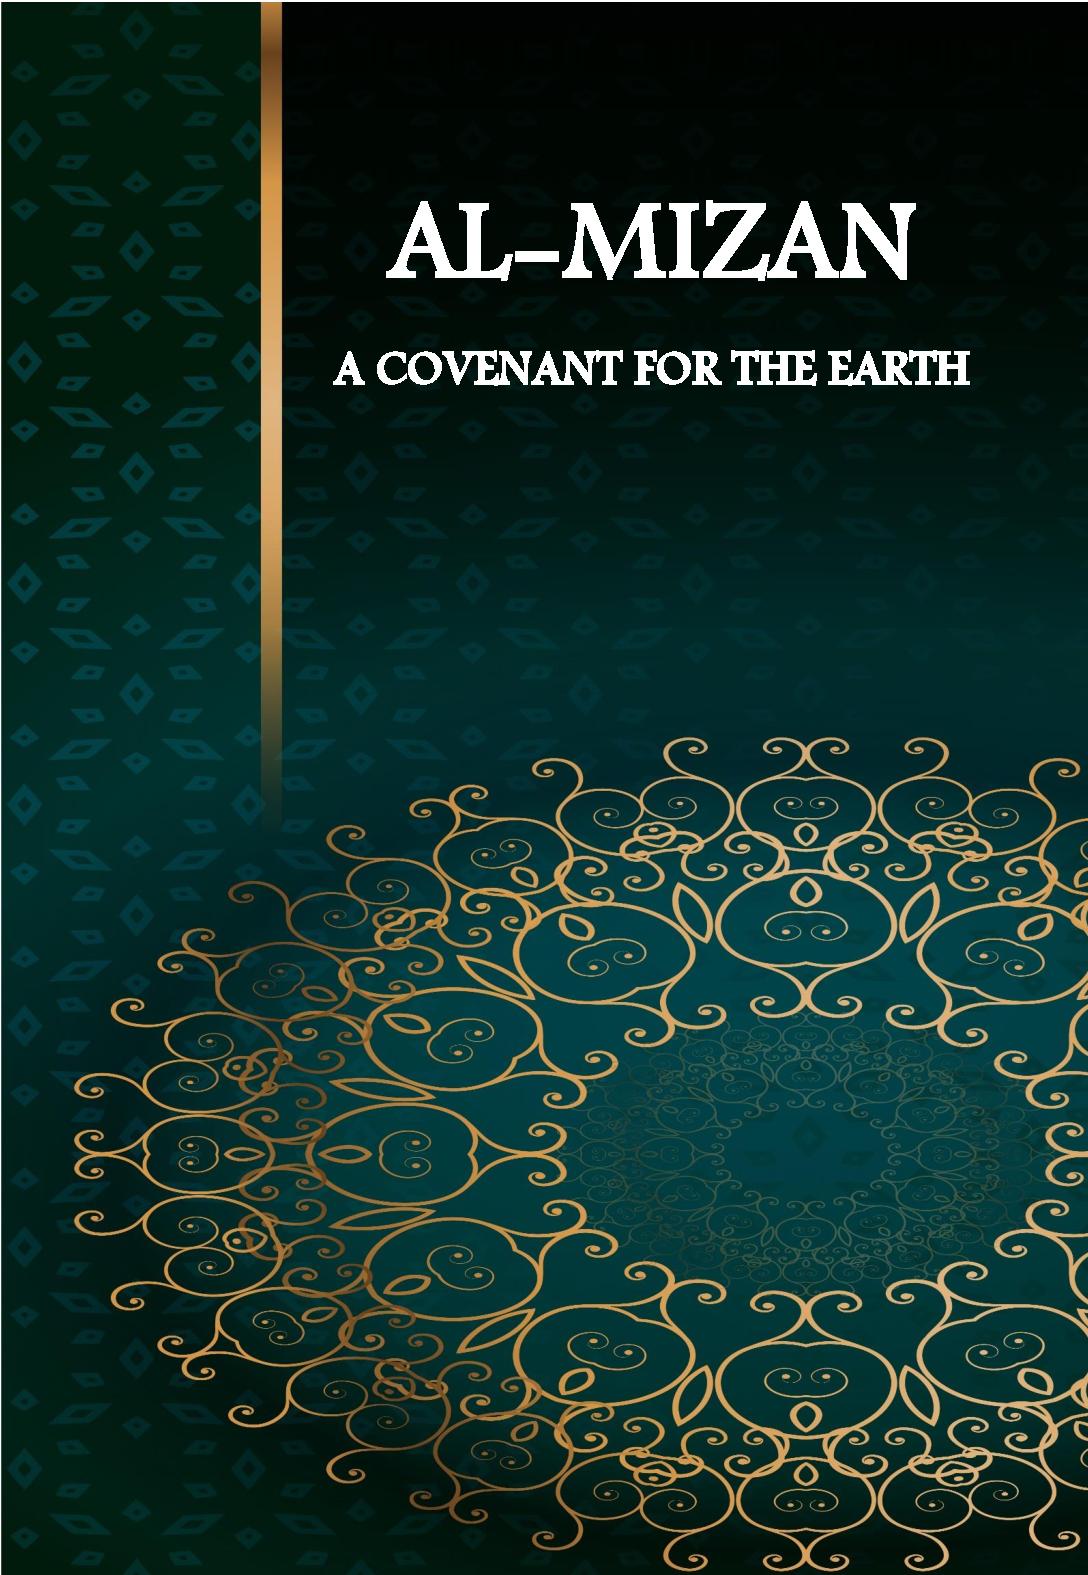 Al-Mizan: A Covenant for the Earth